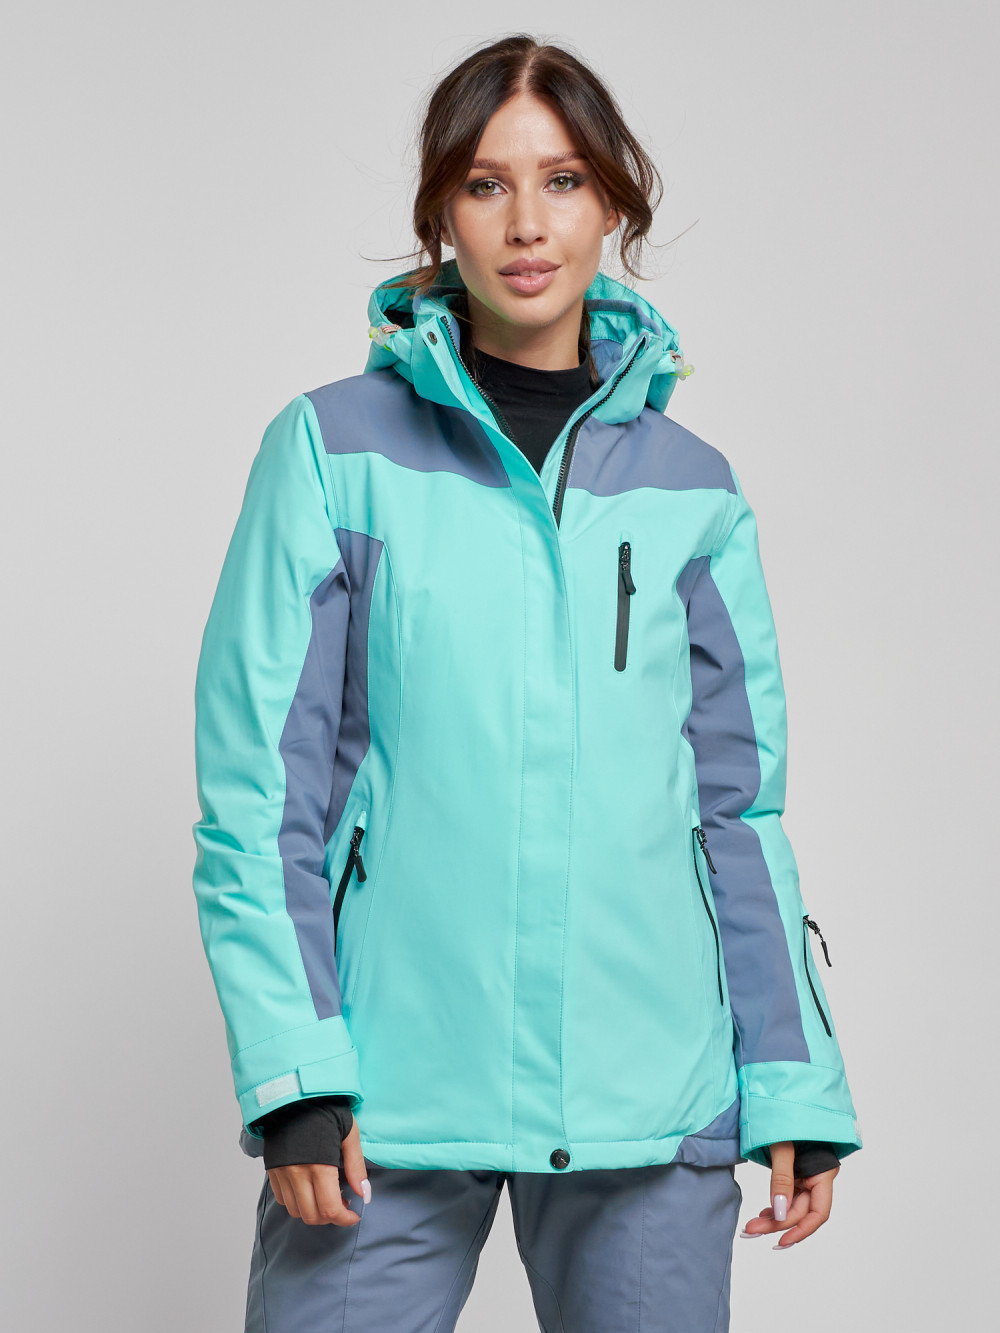 Купить оптом Горнолыжная куртка женская зимняя бирюзового цвета 3310Br в Екатеринбурге